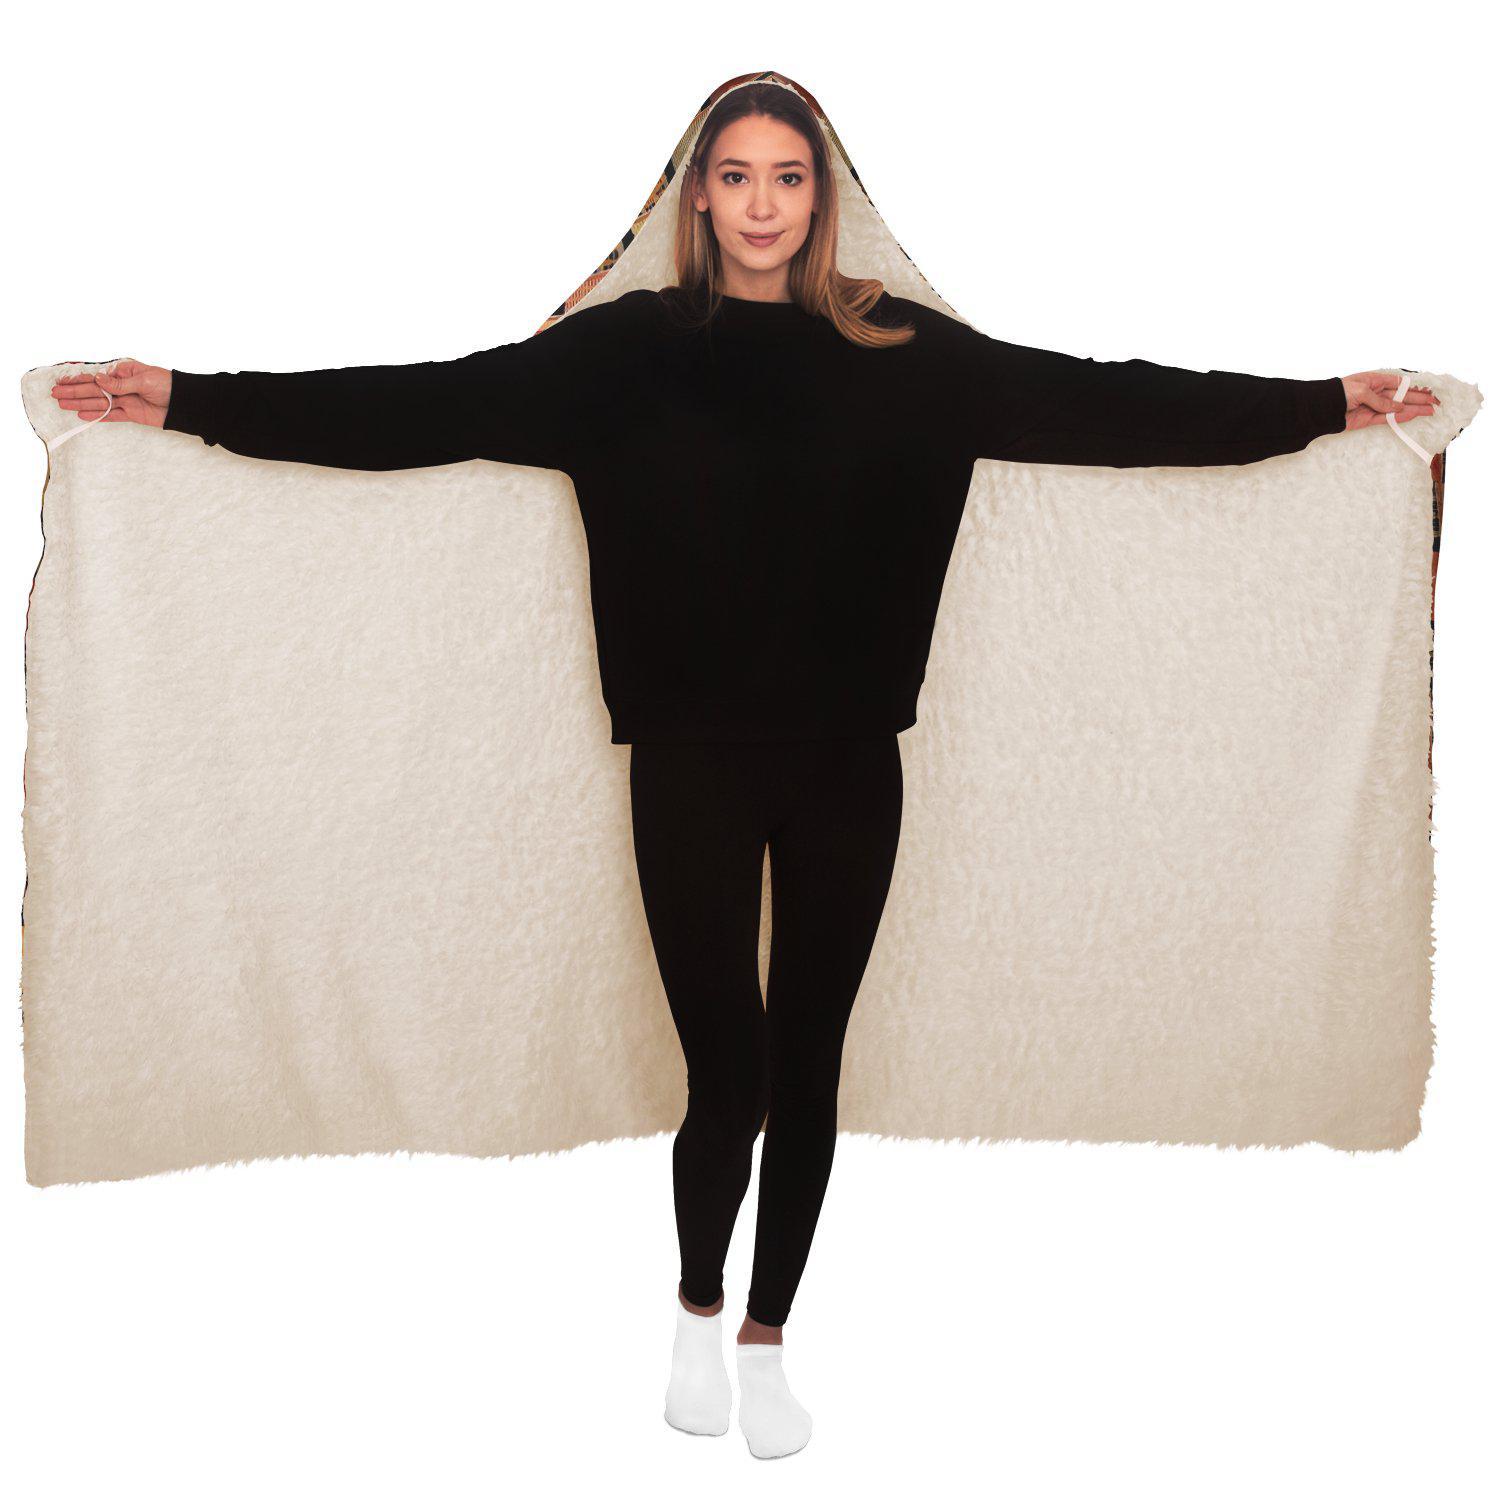 Hooded Blanket - AOP Adult / Premium Sherpa Ewe Culture Inspired Hooded Blanket